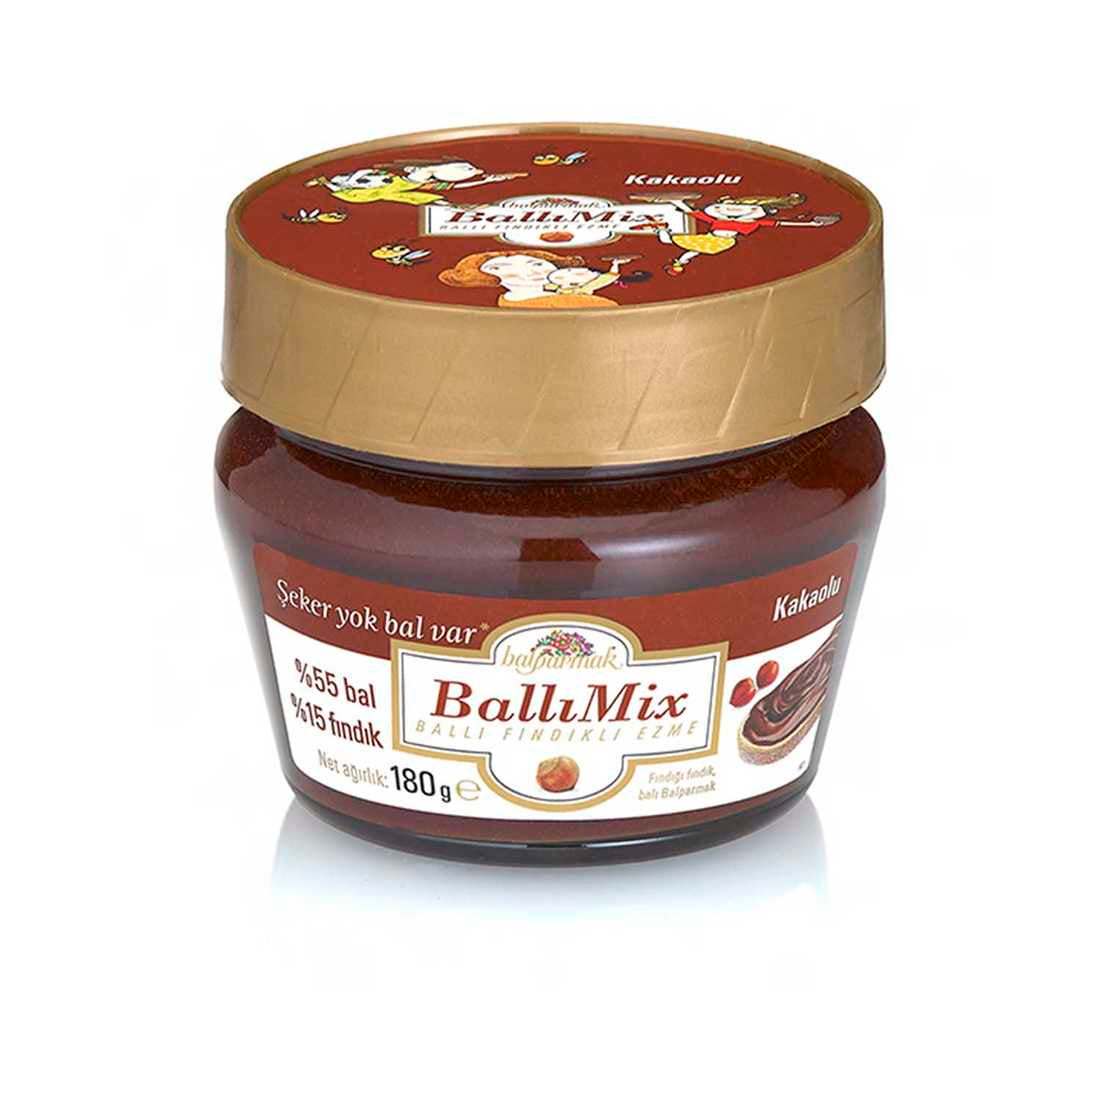 ballımix honey mix cocoa honey hazelnut paste 2